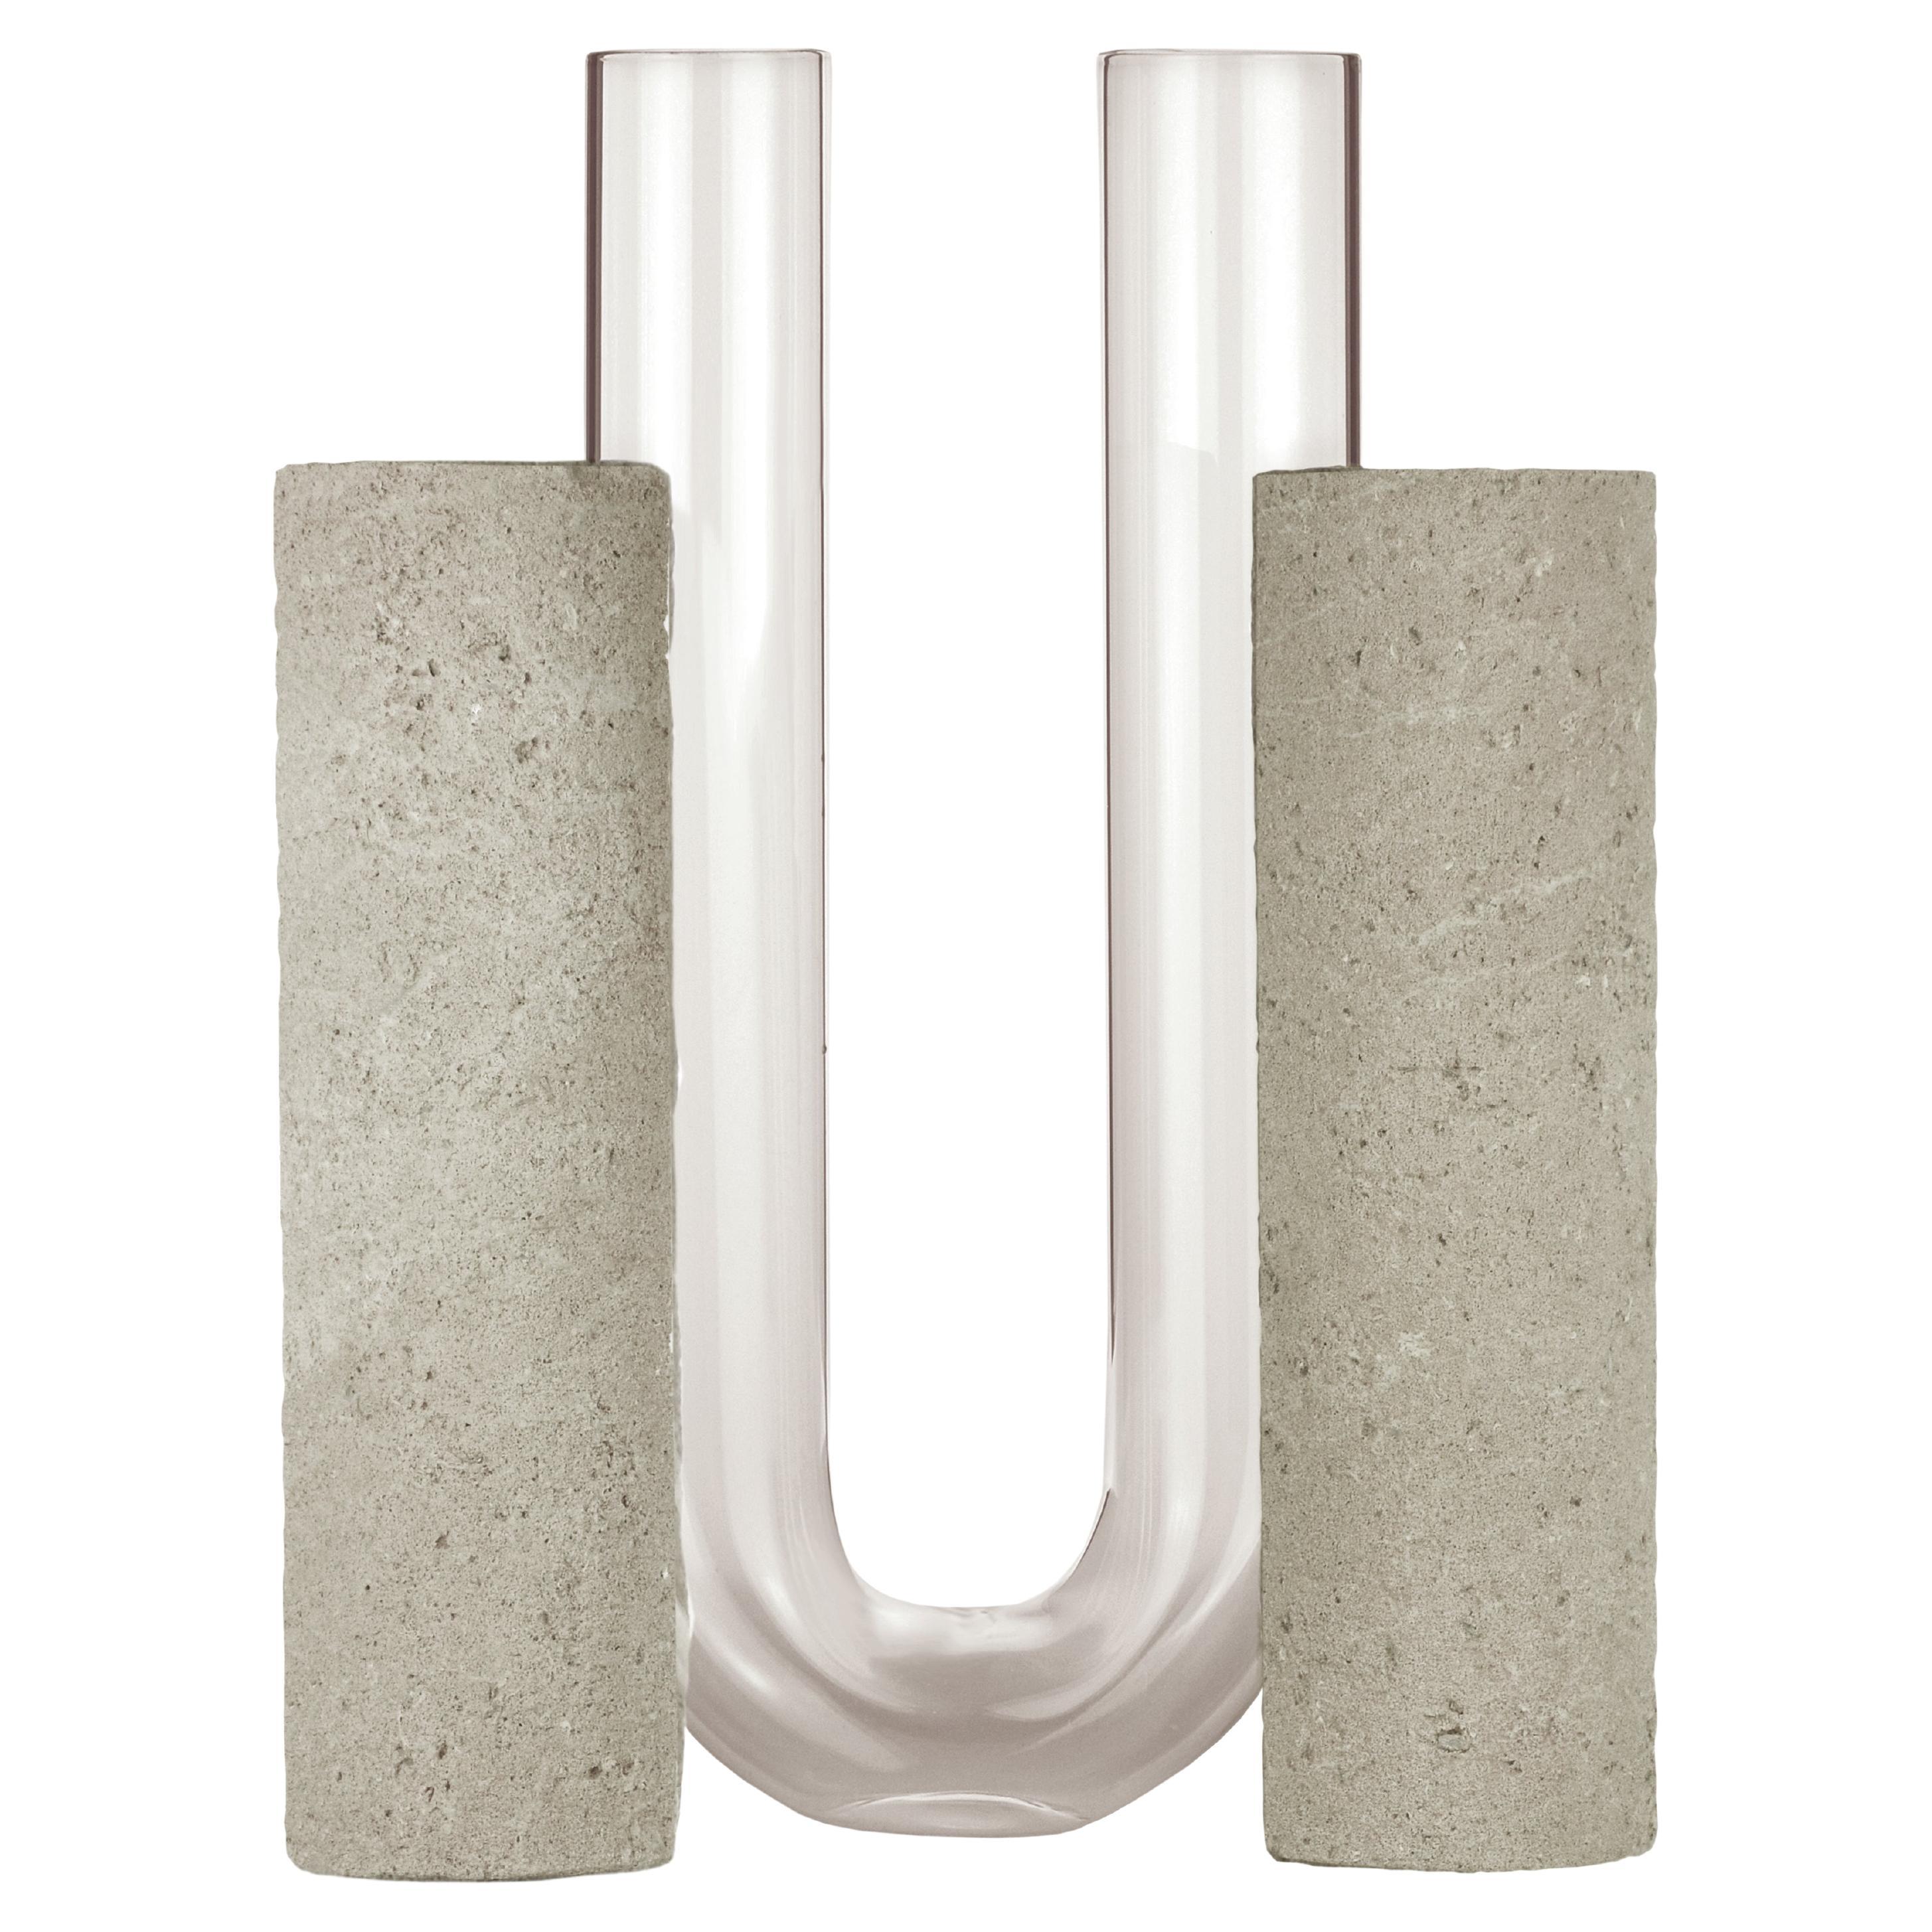 Grey-Smoked Cochlea Dello Sviluppo Soils Edition Vase by Coki Barbieri